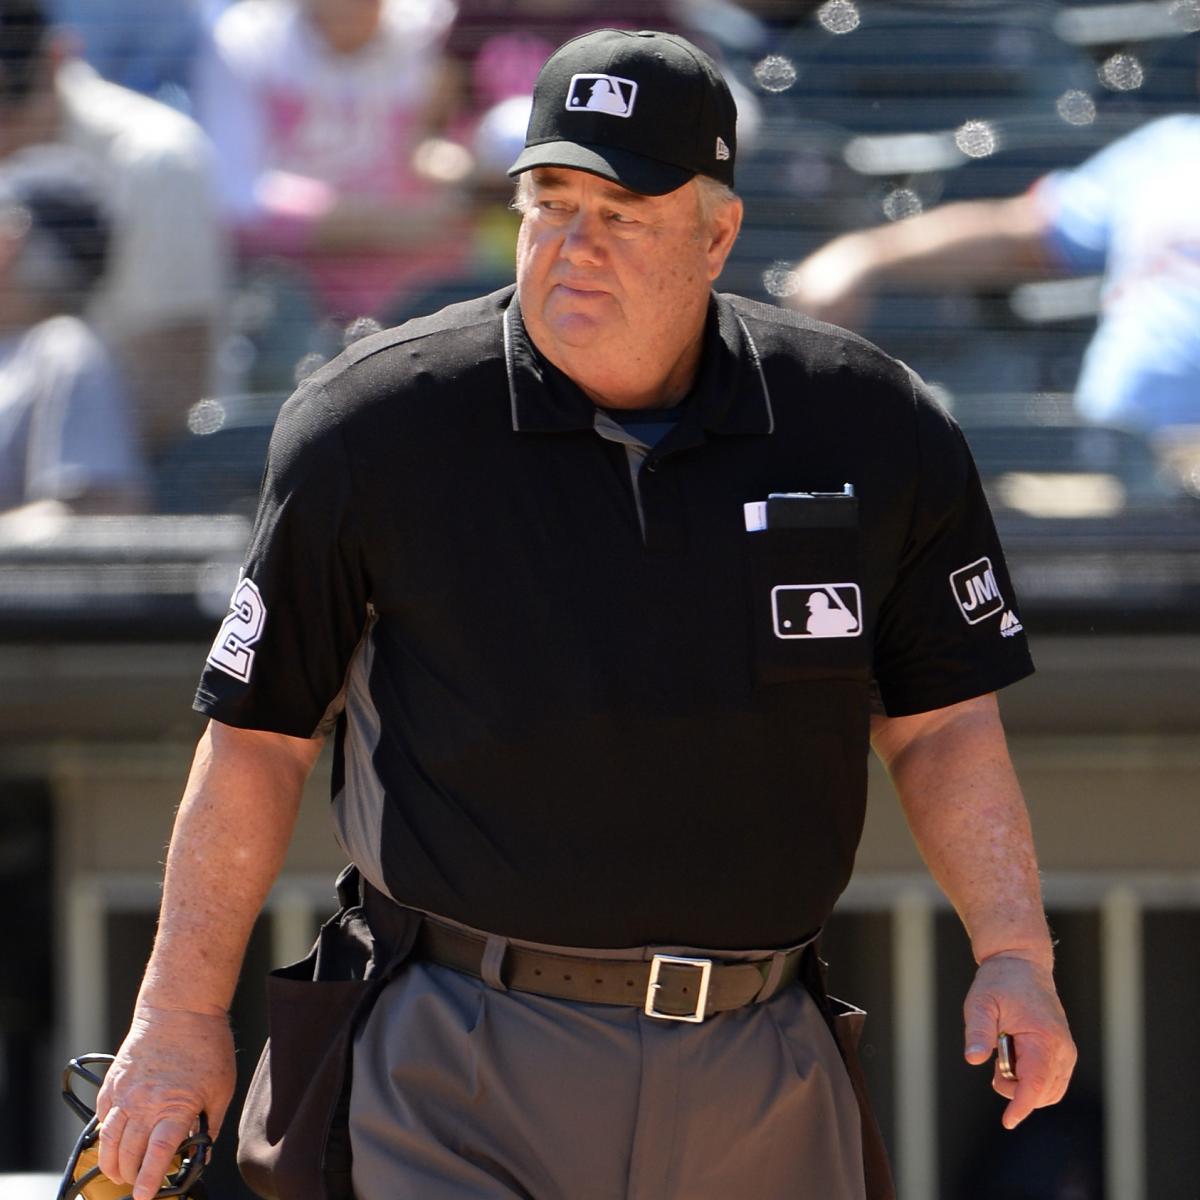 High-risk MLB umpire Joe West has no coronavirus worries